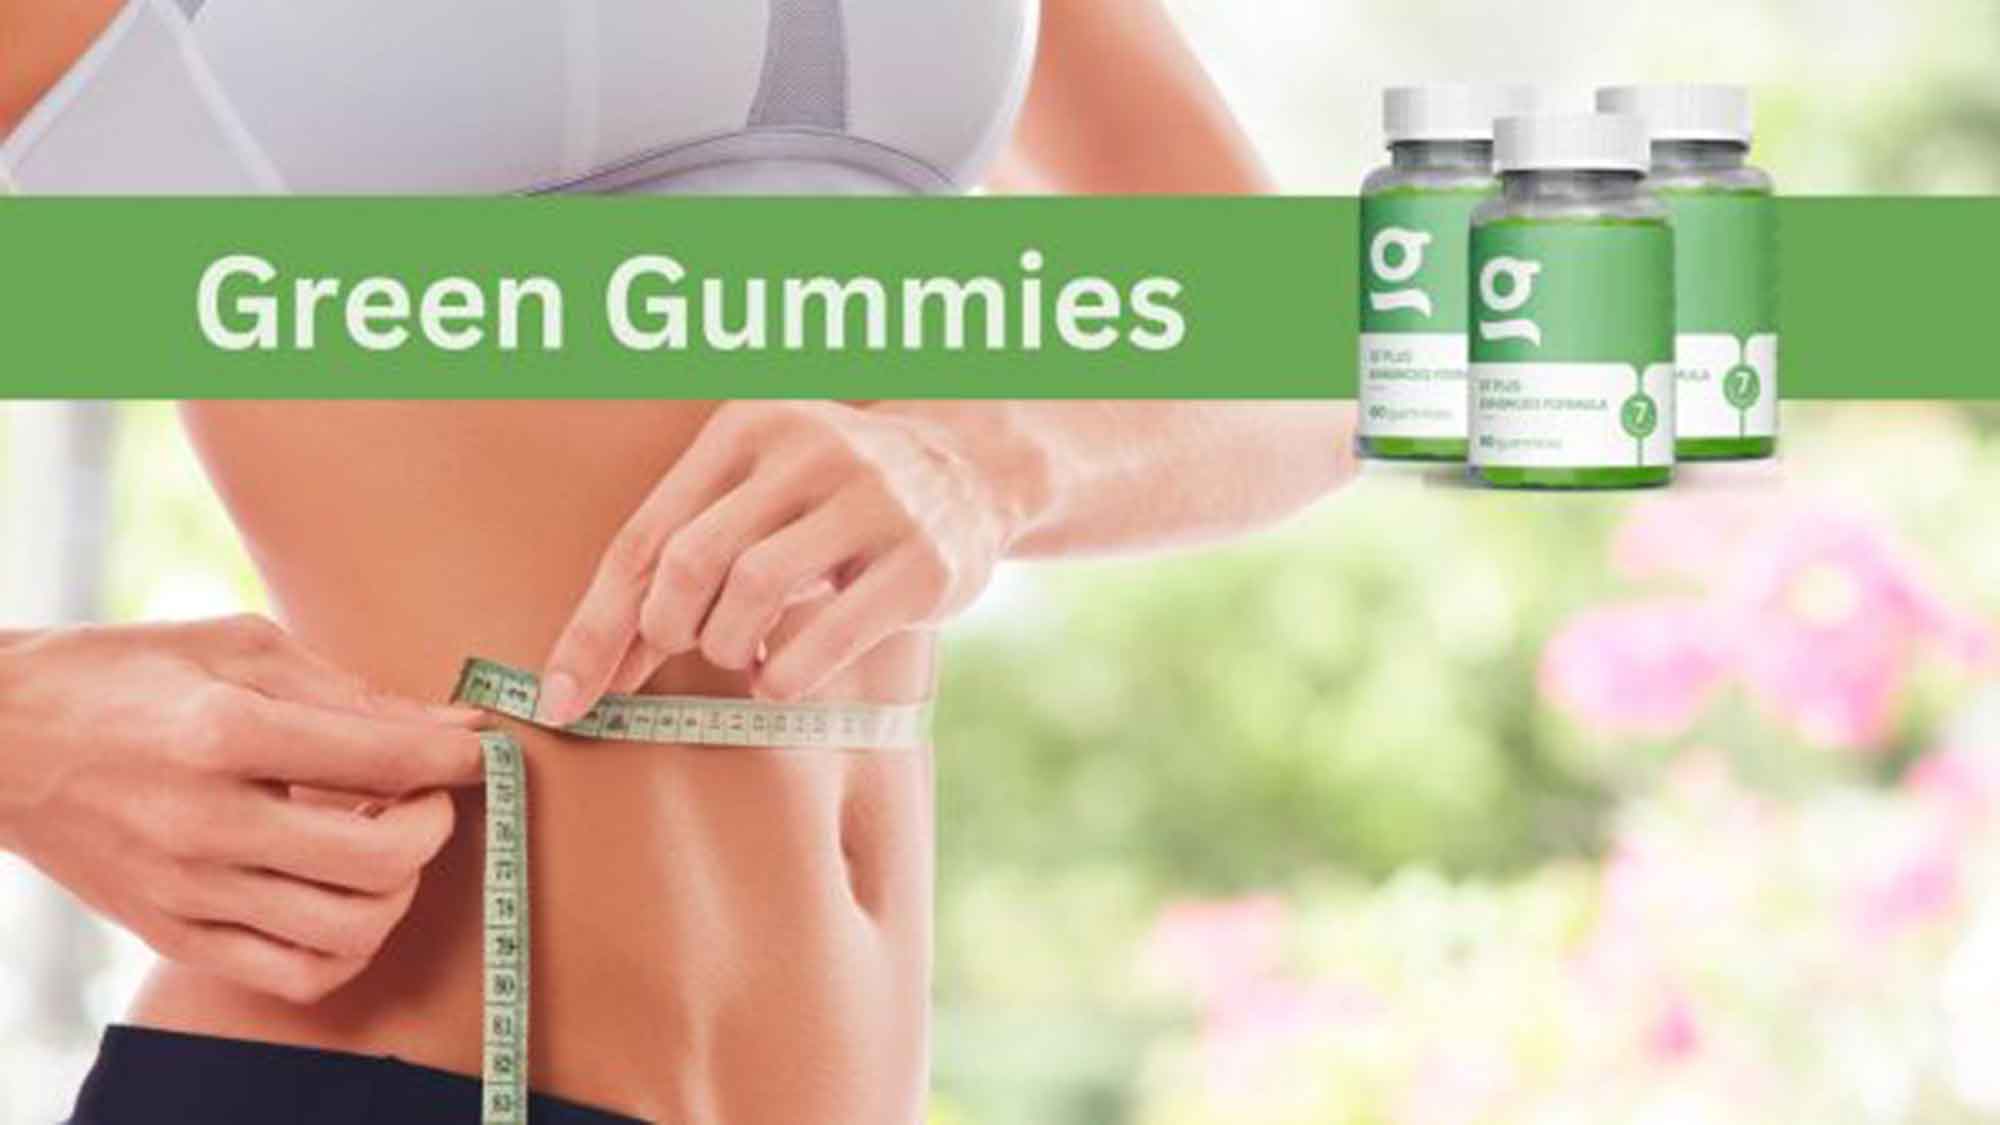 Anzeige: Green Gummies wollen das Abnehmen erleichtern